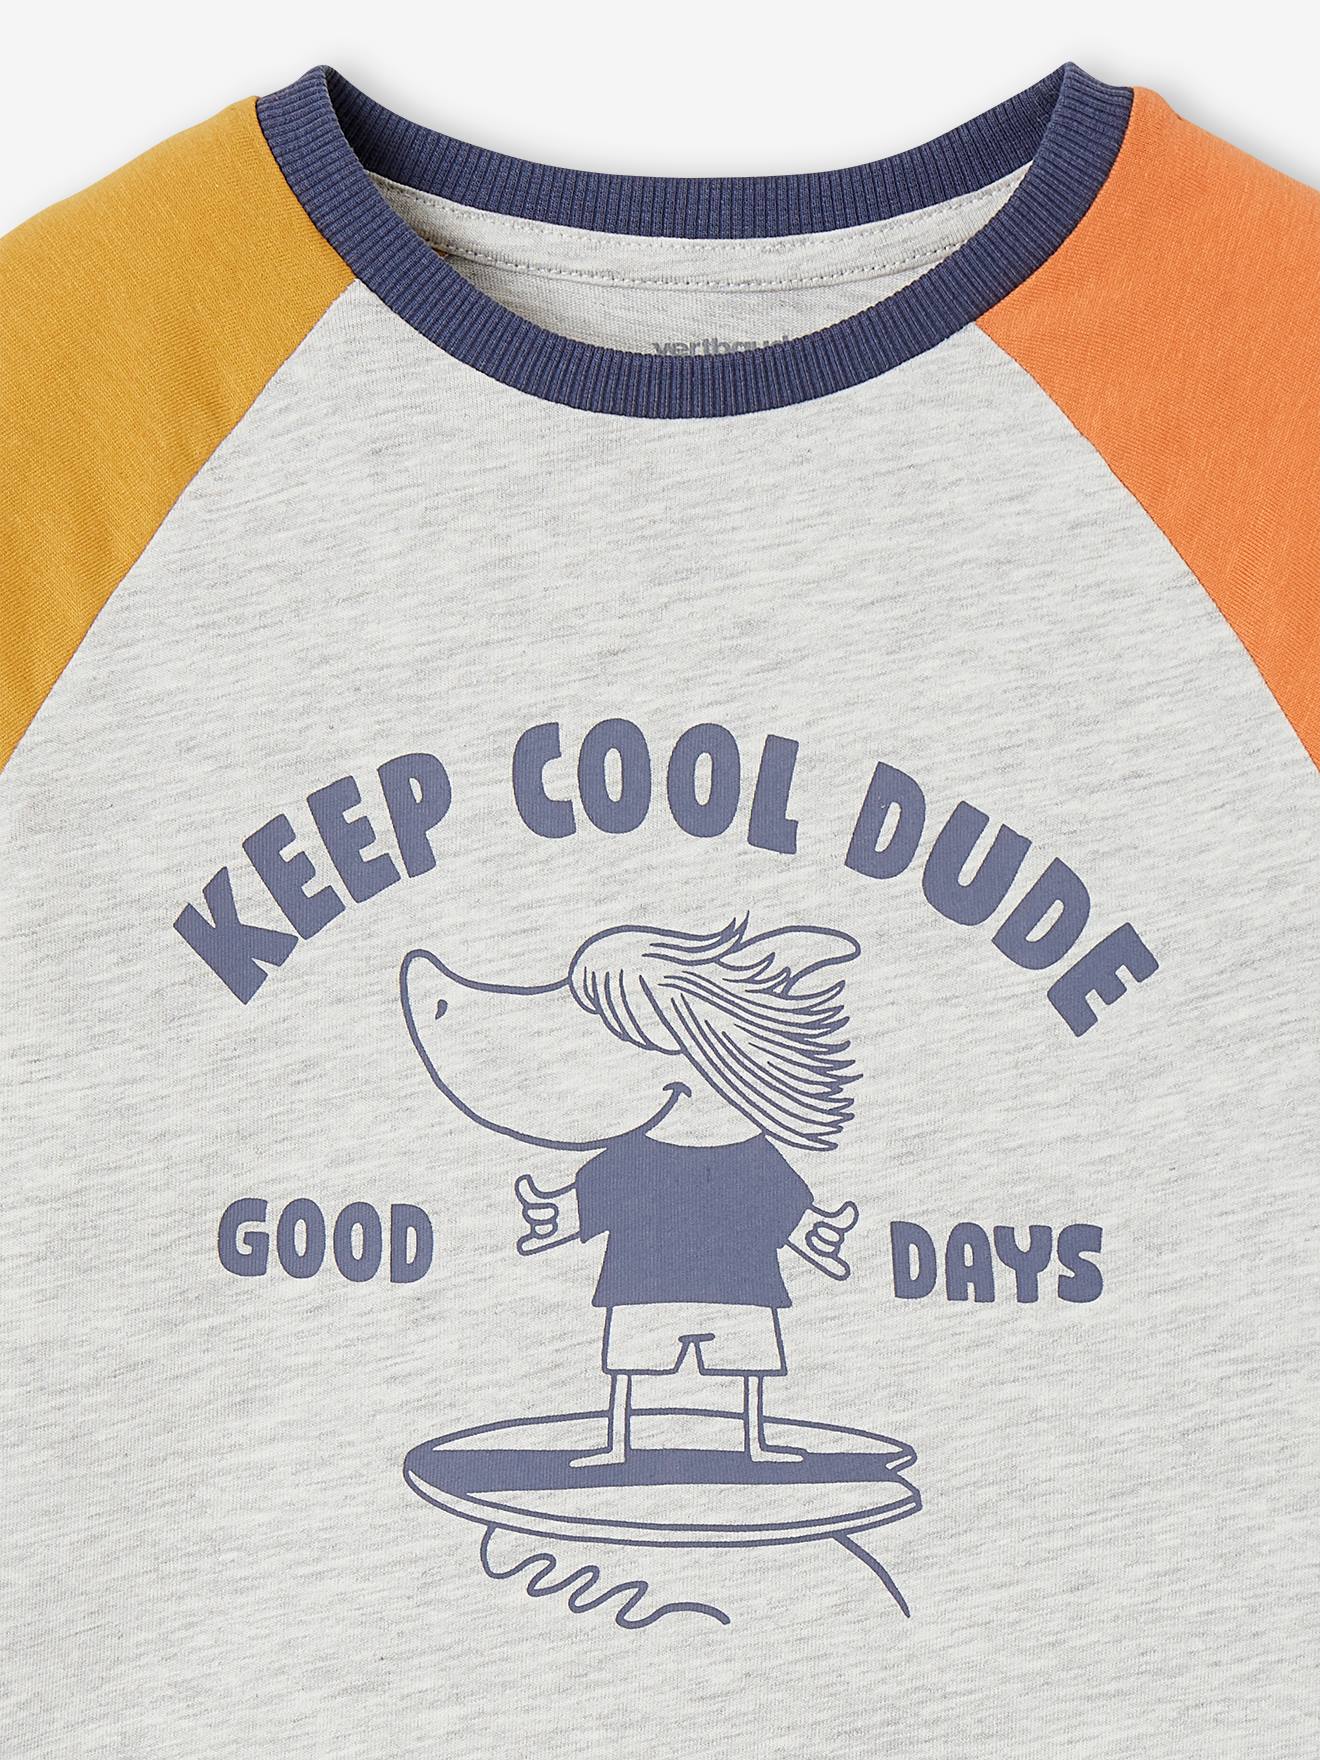 T-shirt colorblock tubarão, para menino-Menino 2-14 anos